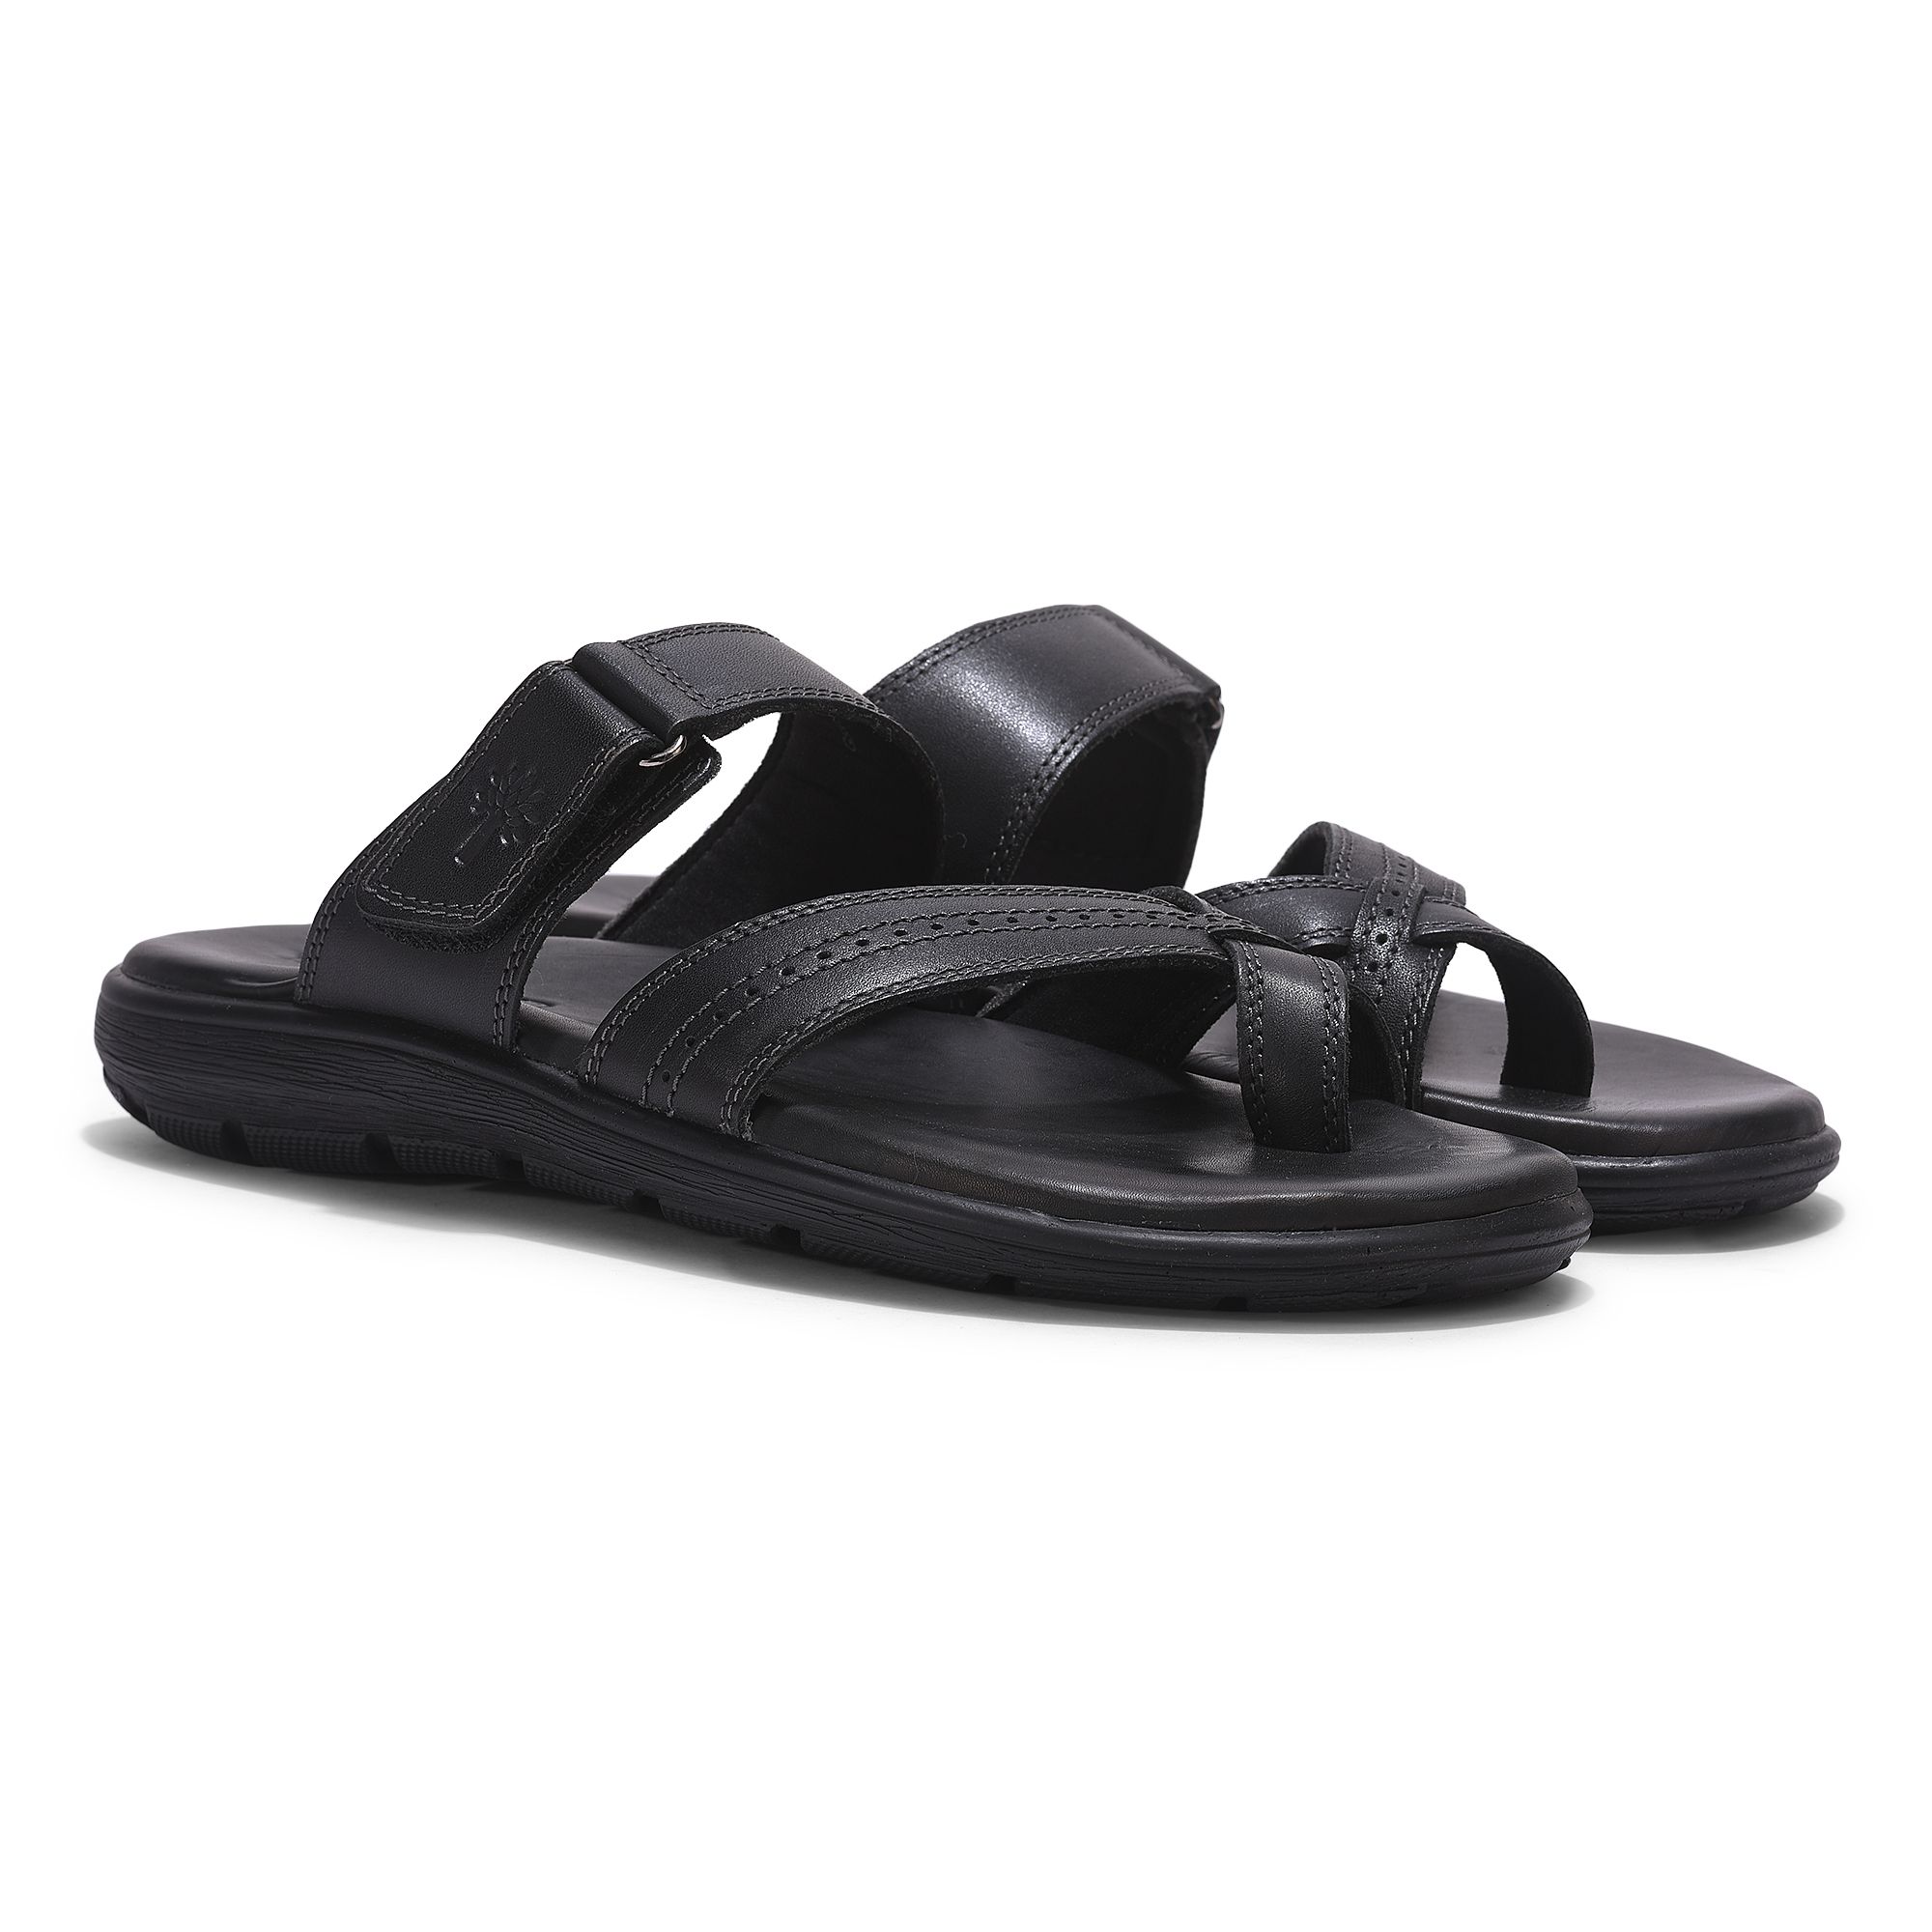 Black casual sandal for men